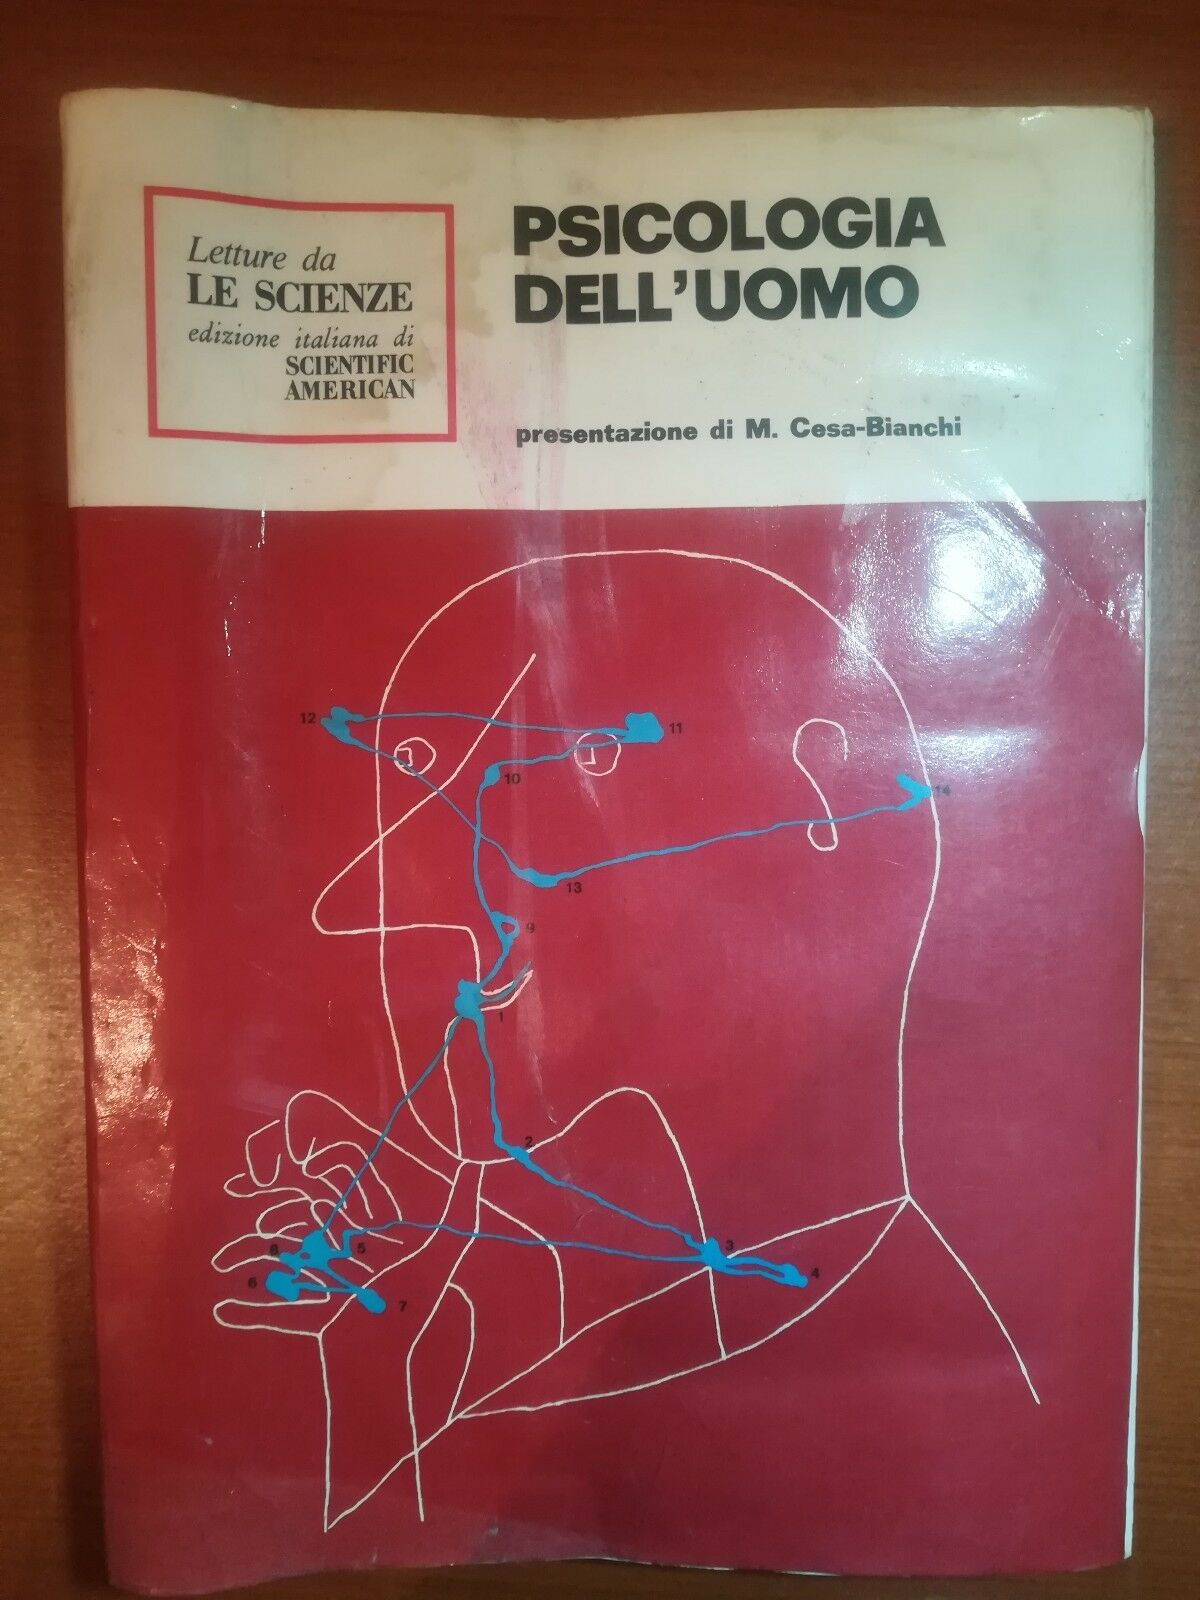 Psicologia dell'uomo - M.Cesa-Bianchi - Scientific American - 1974 - M